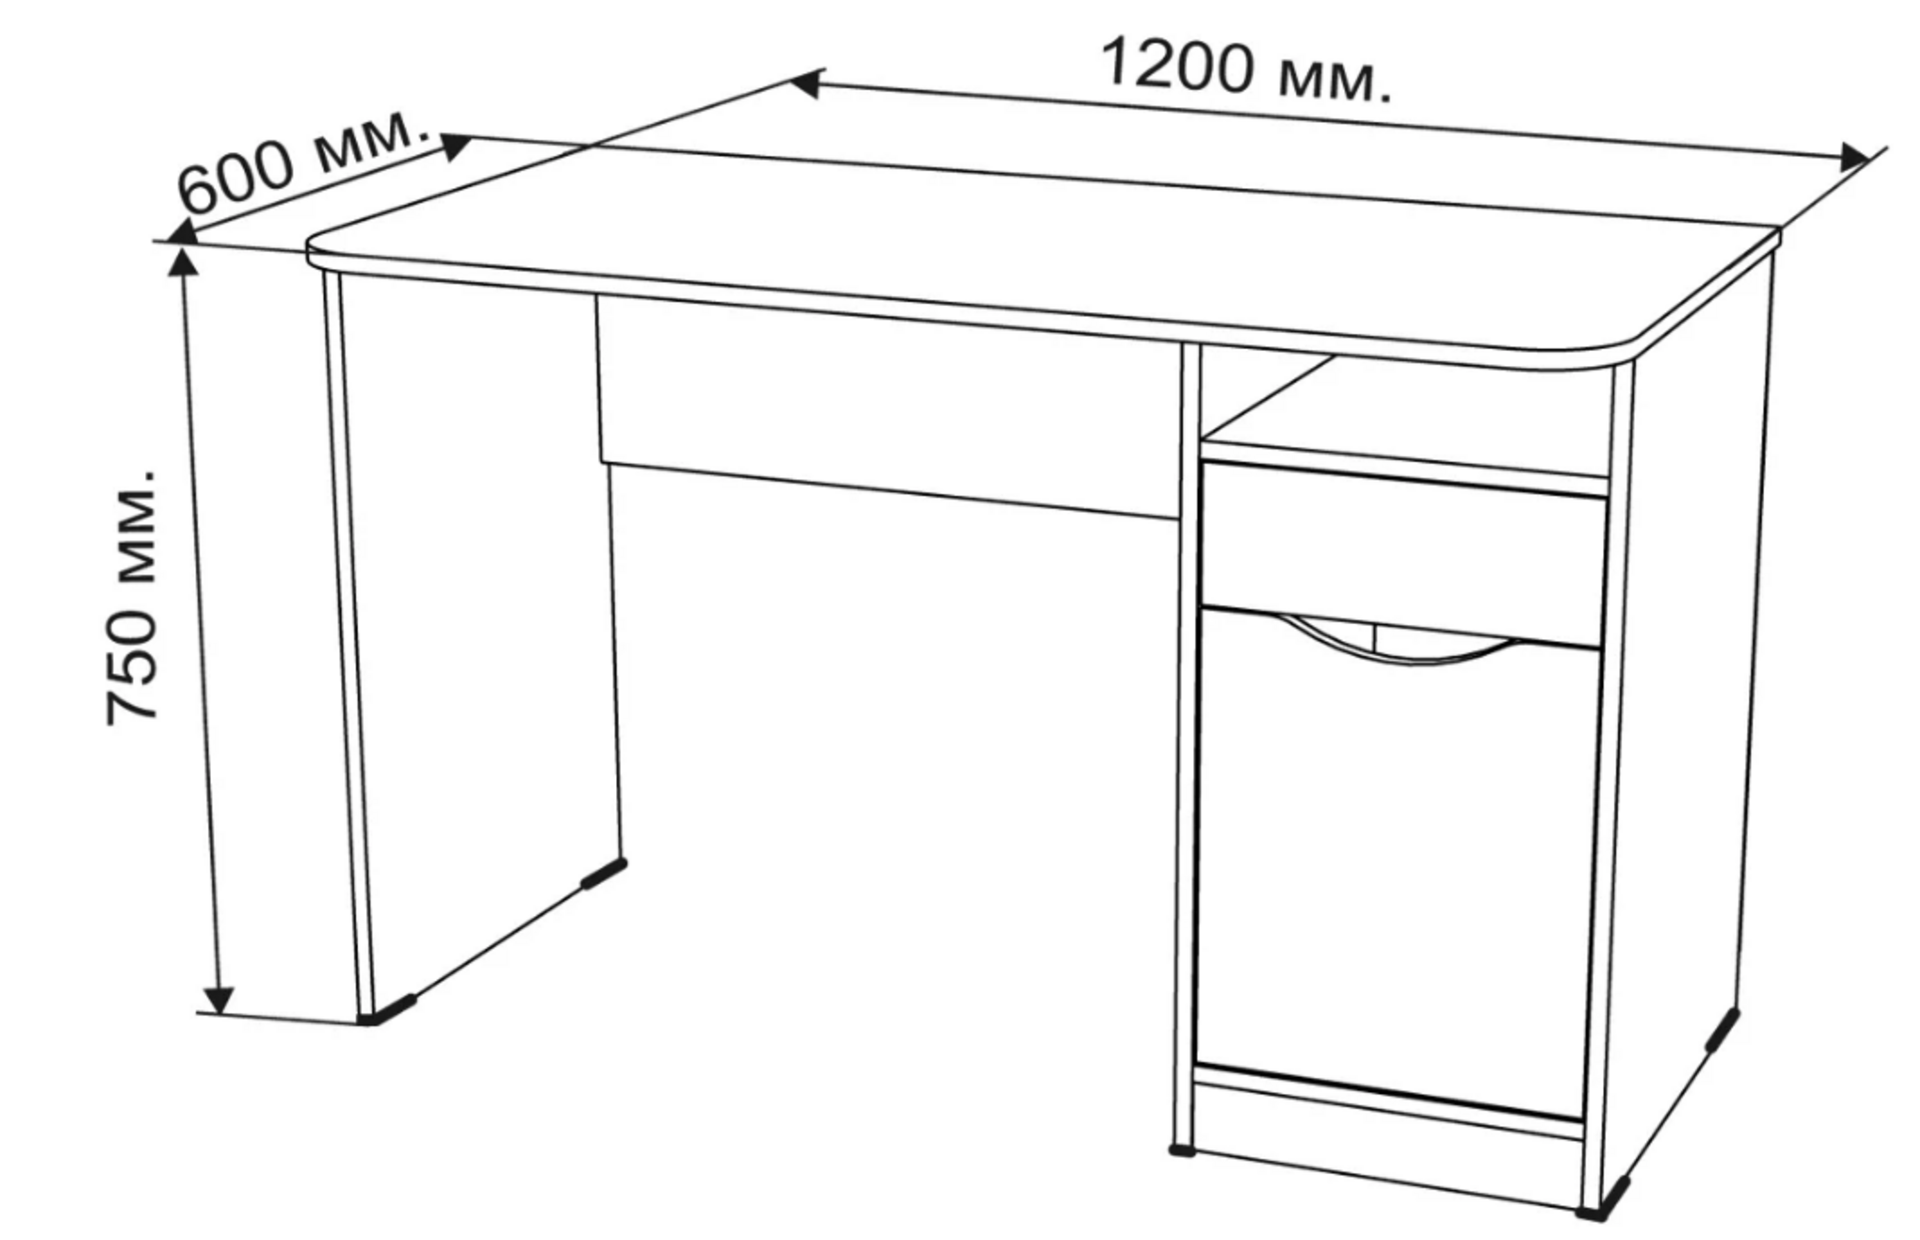 Как правильно подобрать высоту стола для взрослых и детей 11 - ДиванеТТо